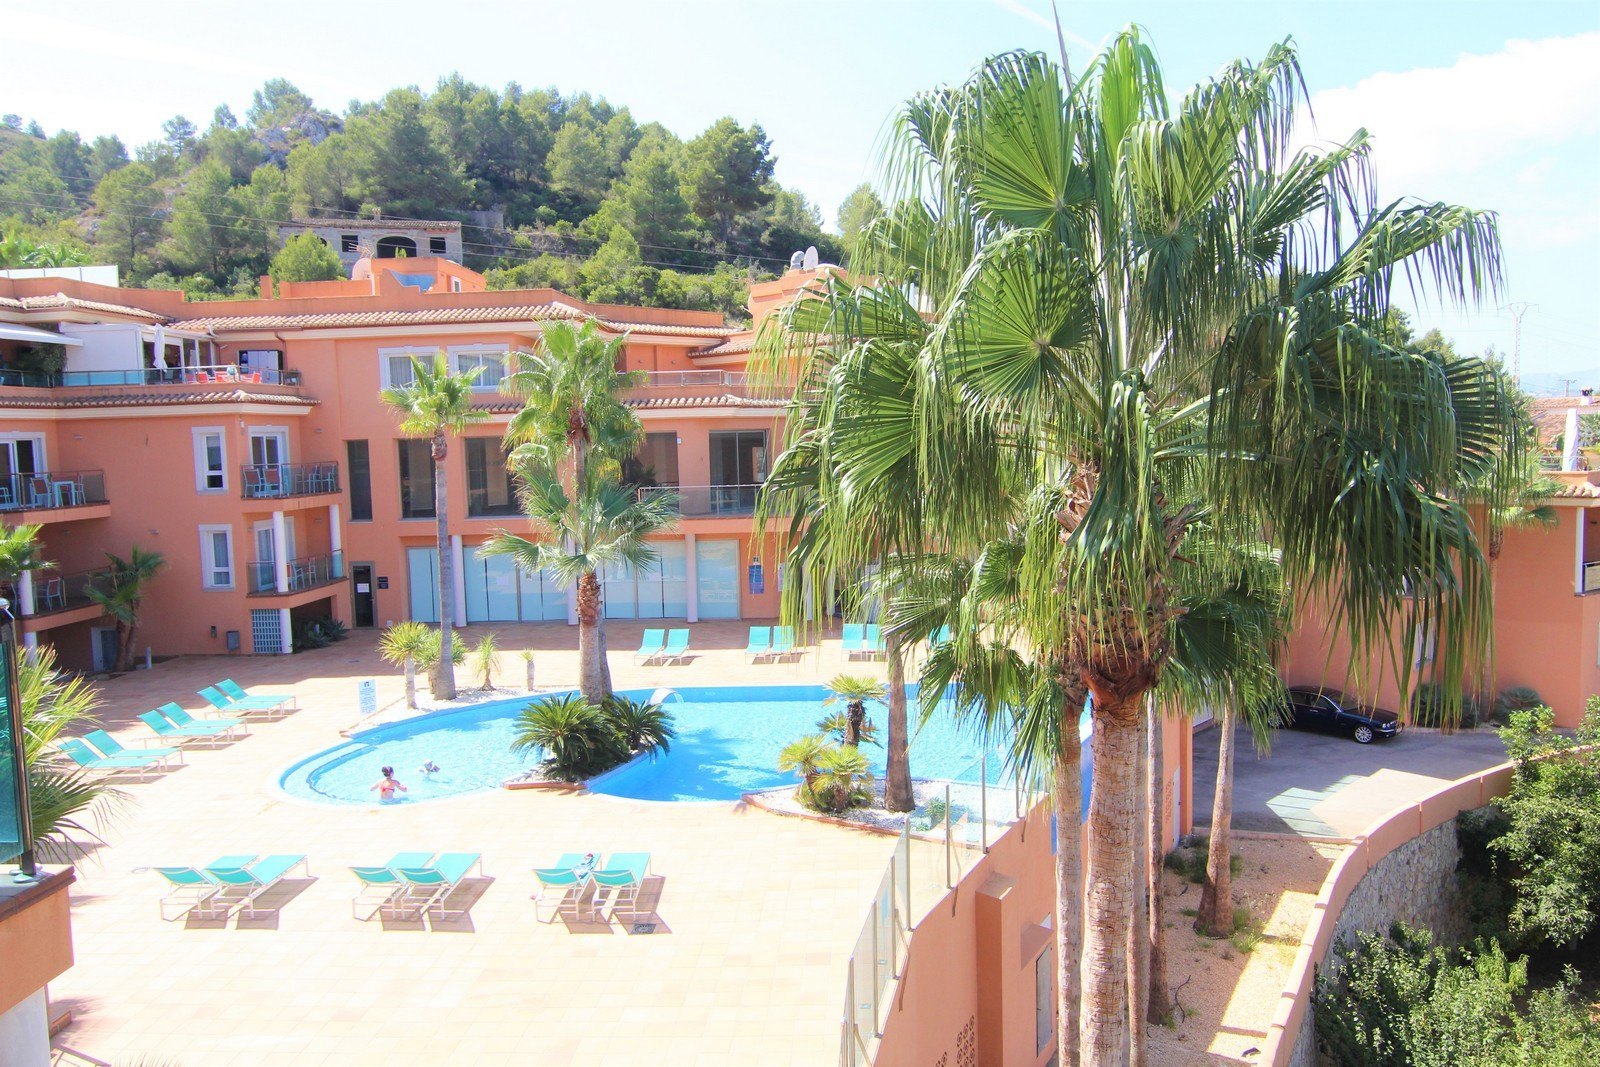 Appartement te koop met zwembad in Calistros Benitatxell.